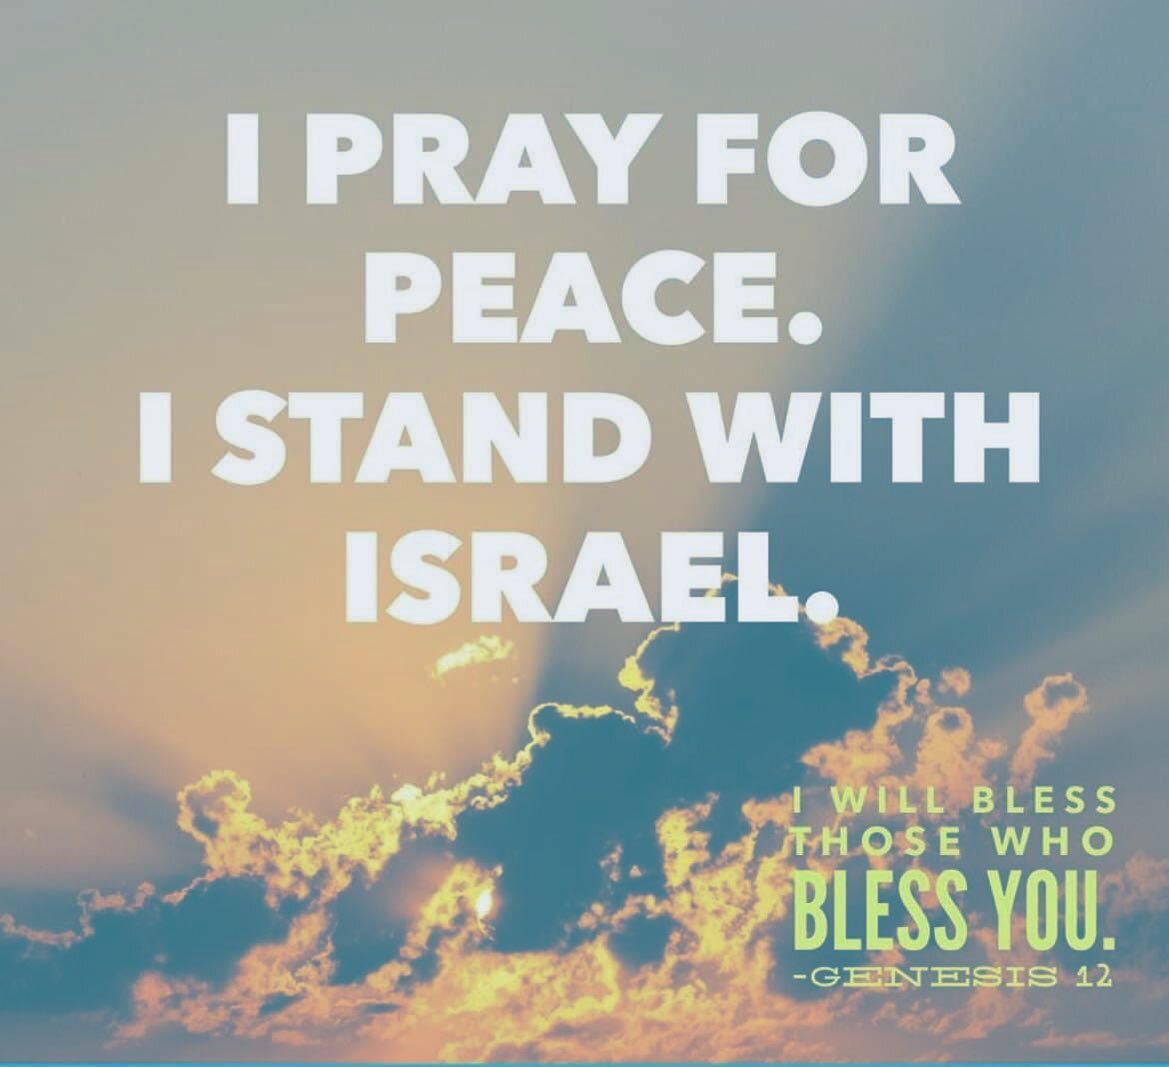 Praying for Peace. Praying for Israel. Praying for the world. 😔💔🙏🏼

#prayforisrael #prayforamerica #prayforpeace #prayfortheworld #godwins #weneedjesus #yeshua #jesuslovesyou